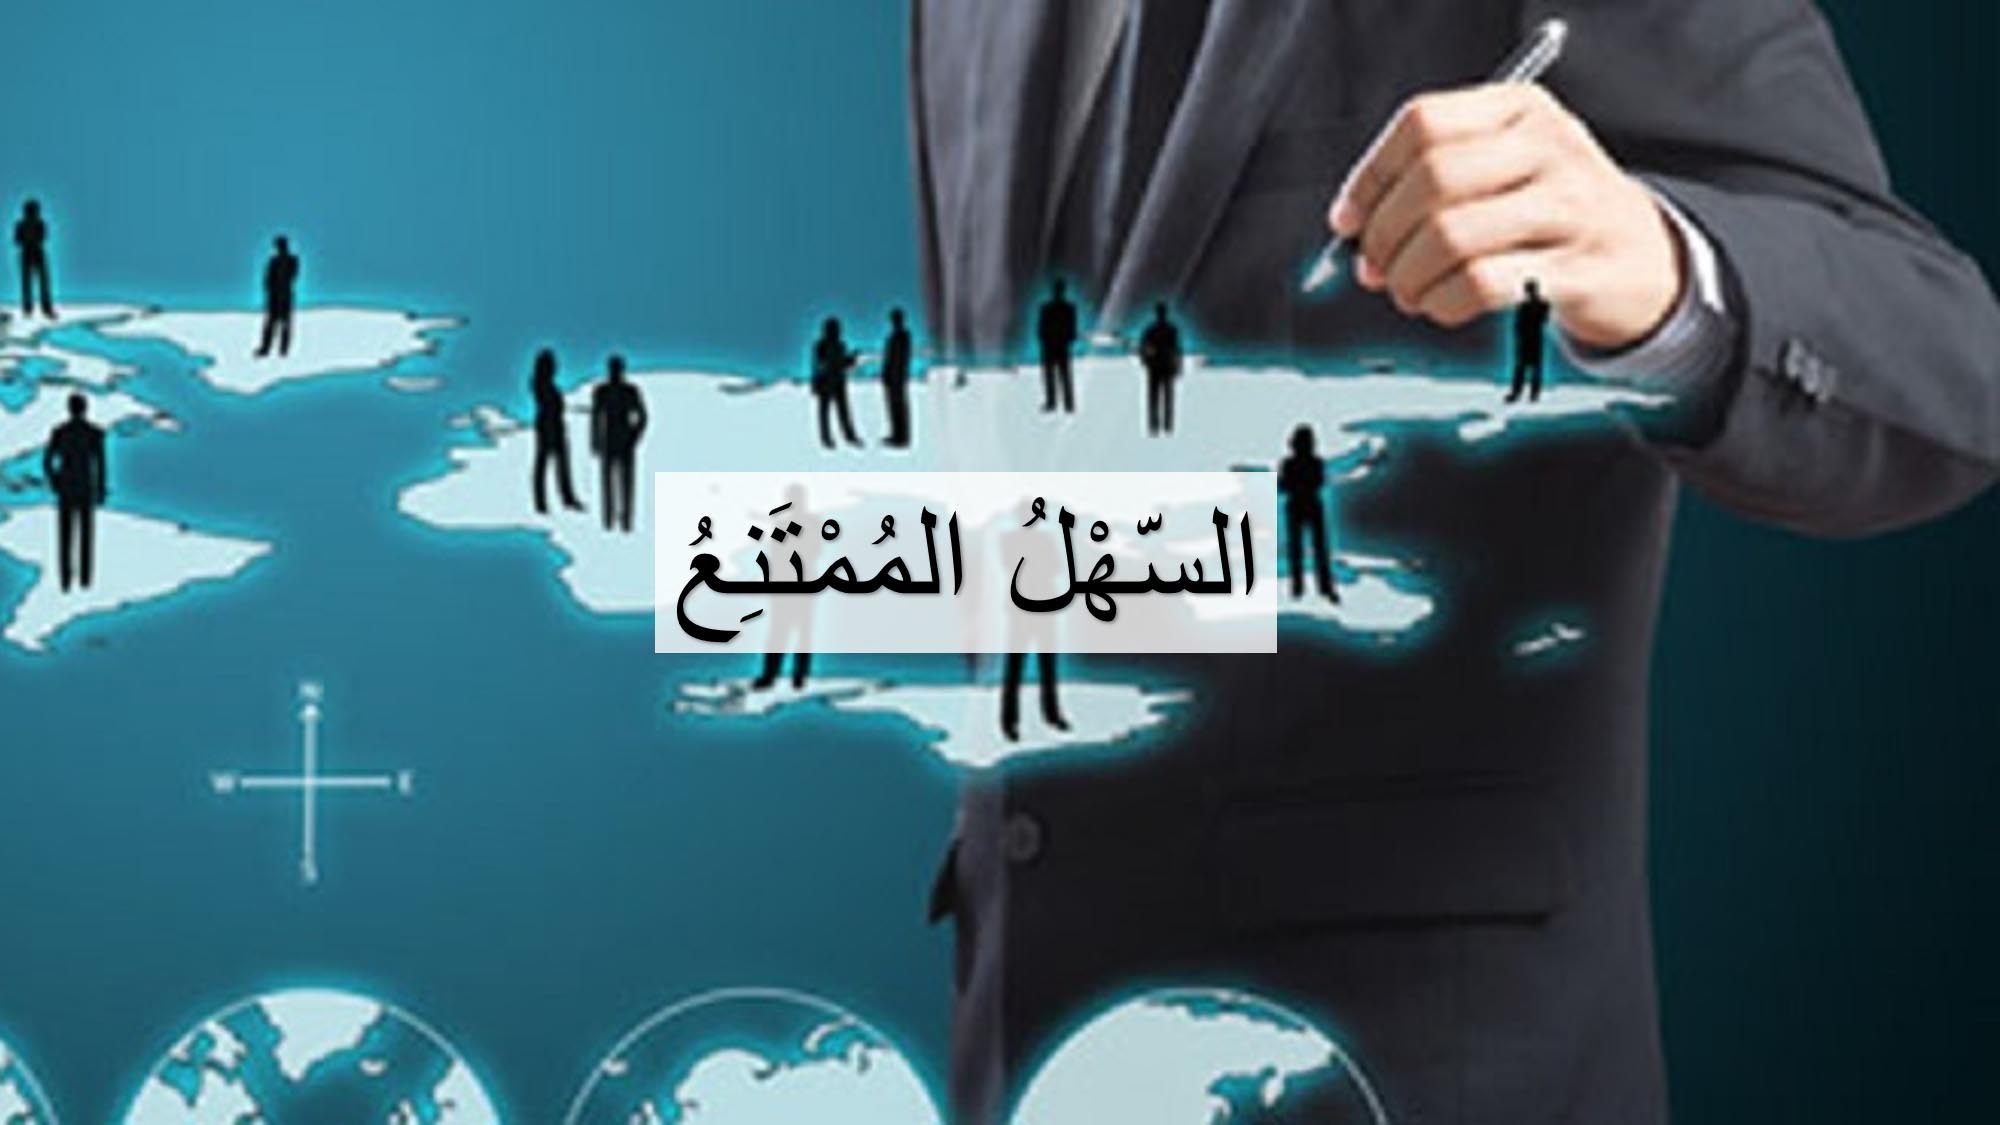 mashariq legal translation services